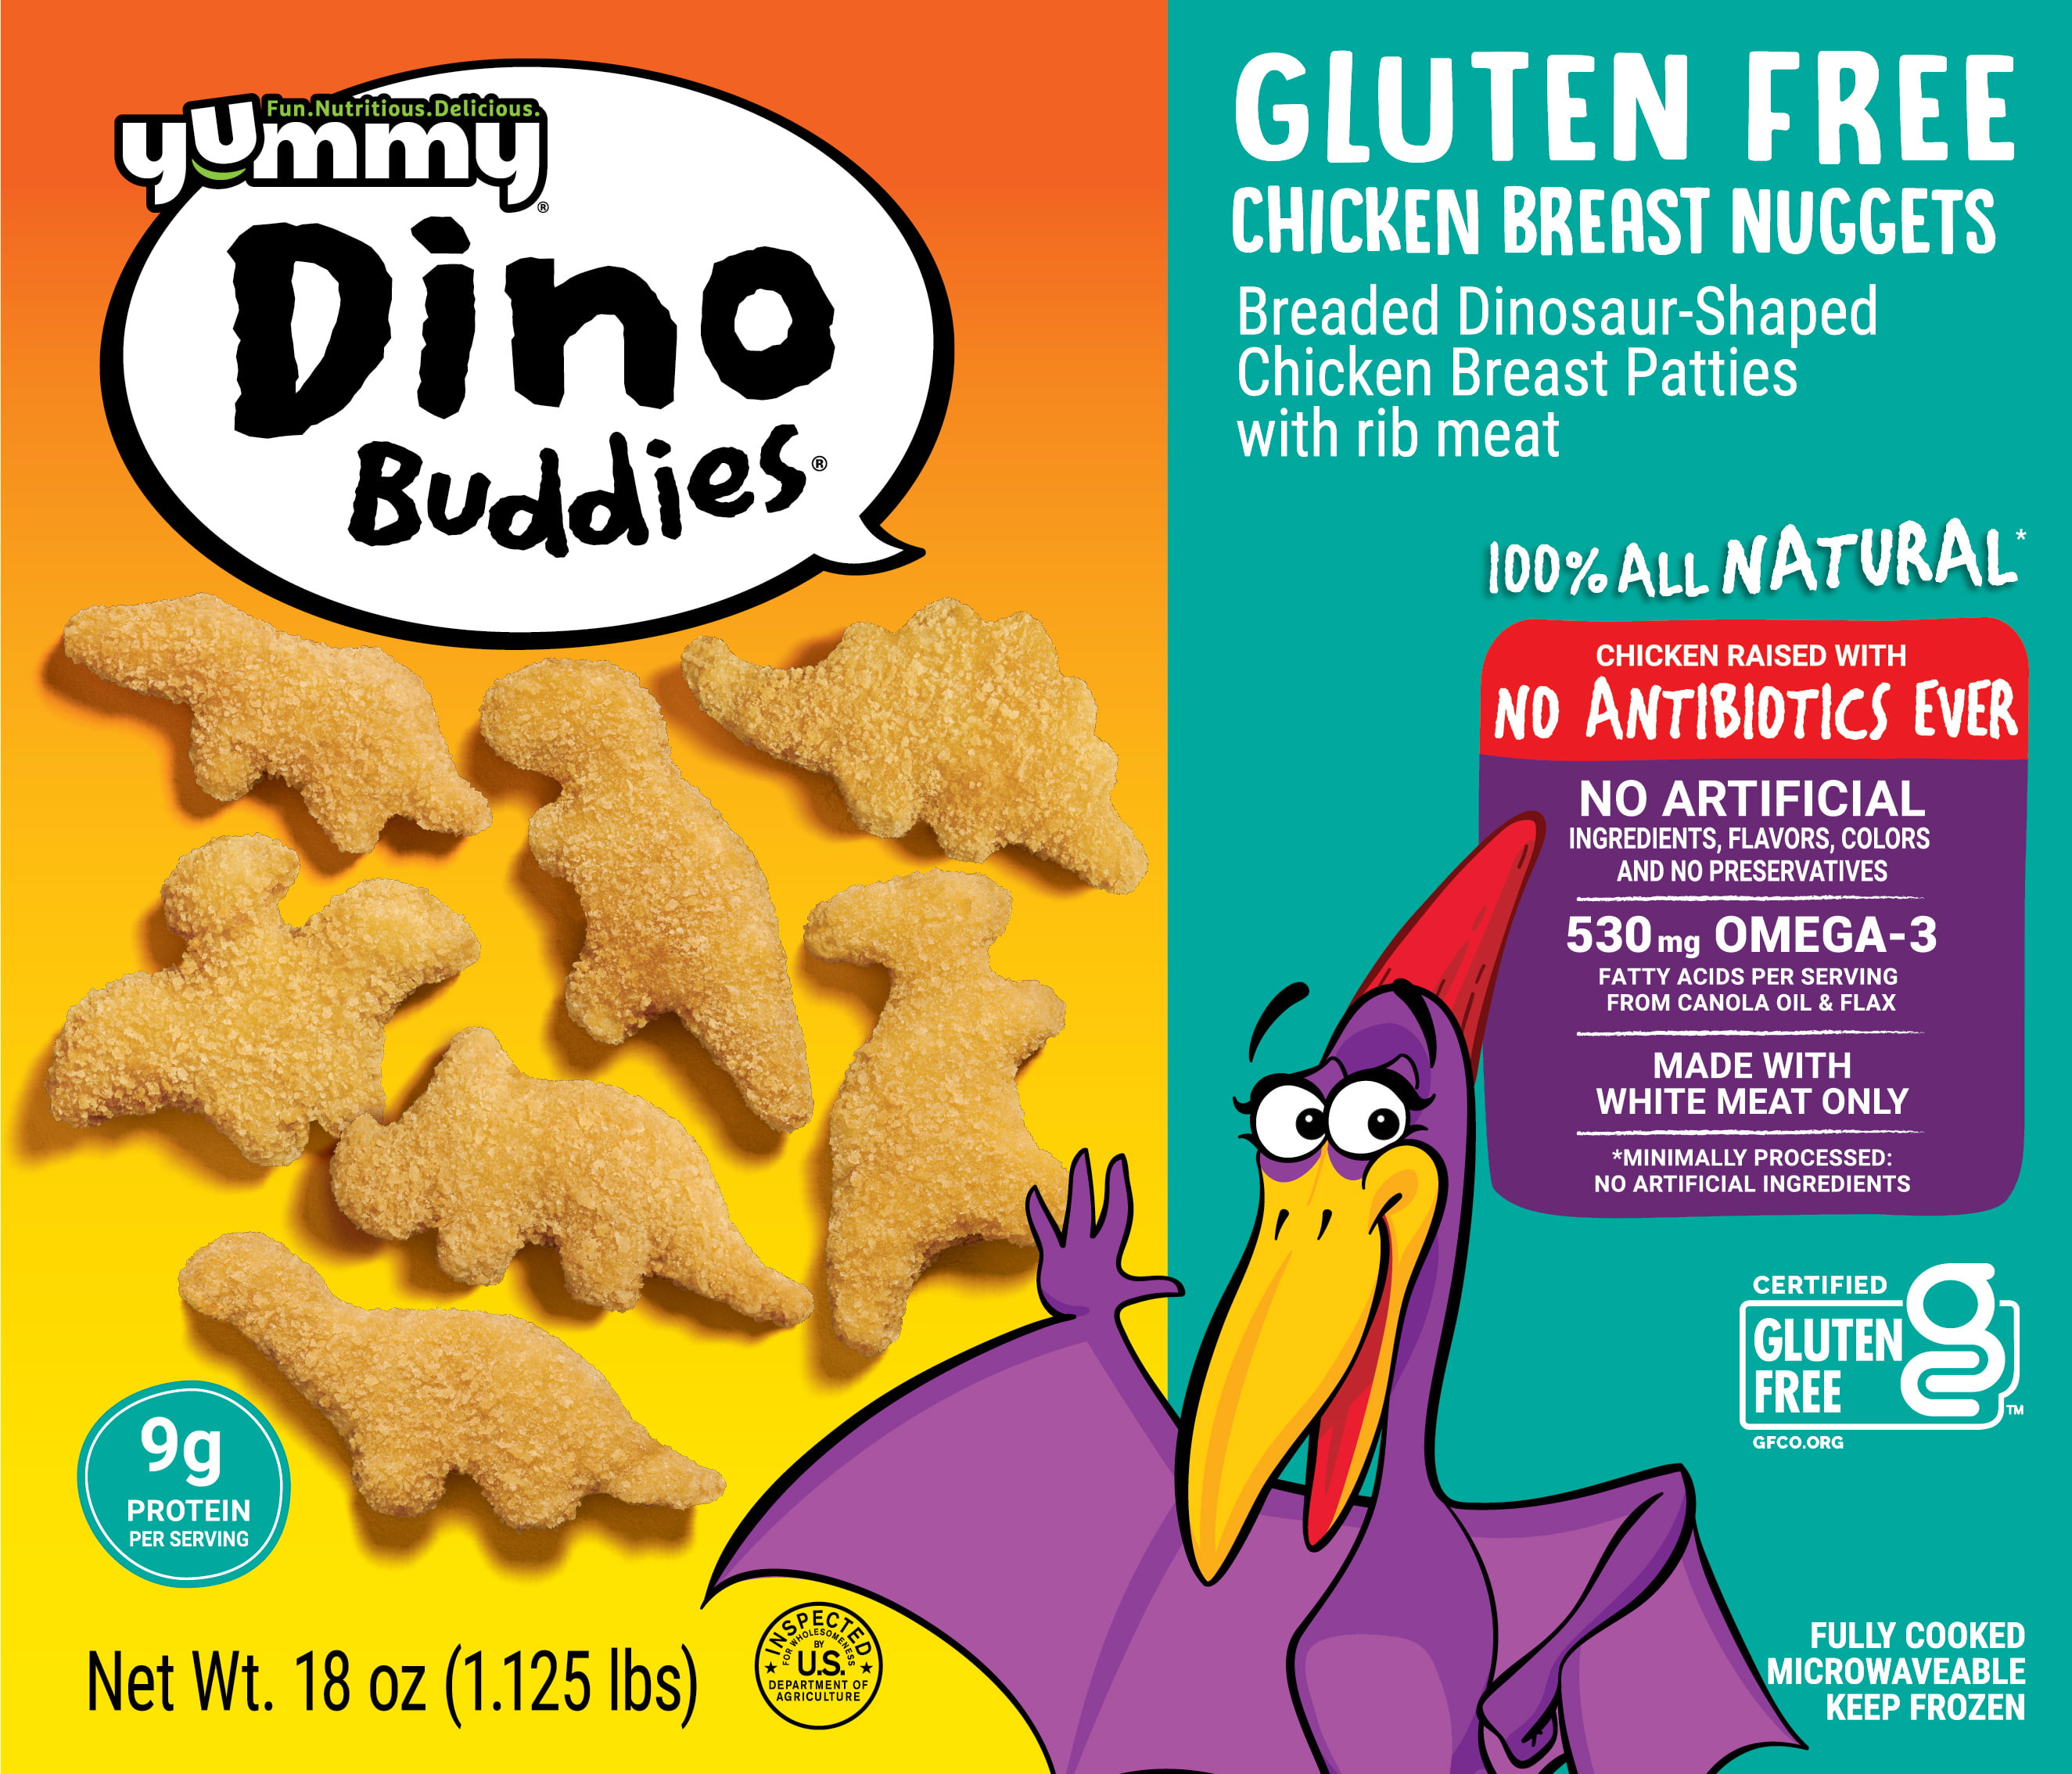 Yummy Dino Buddies Gluten Free Chicken Breast Nuggets 